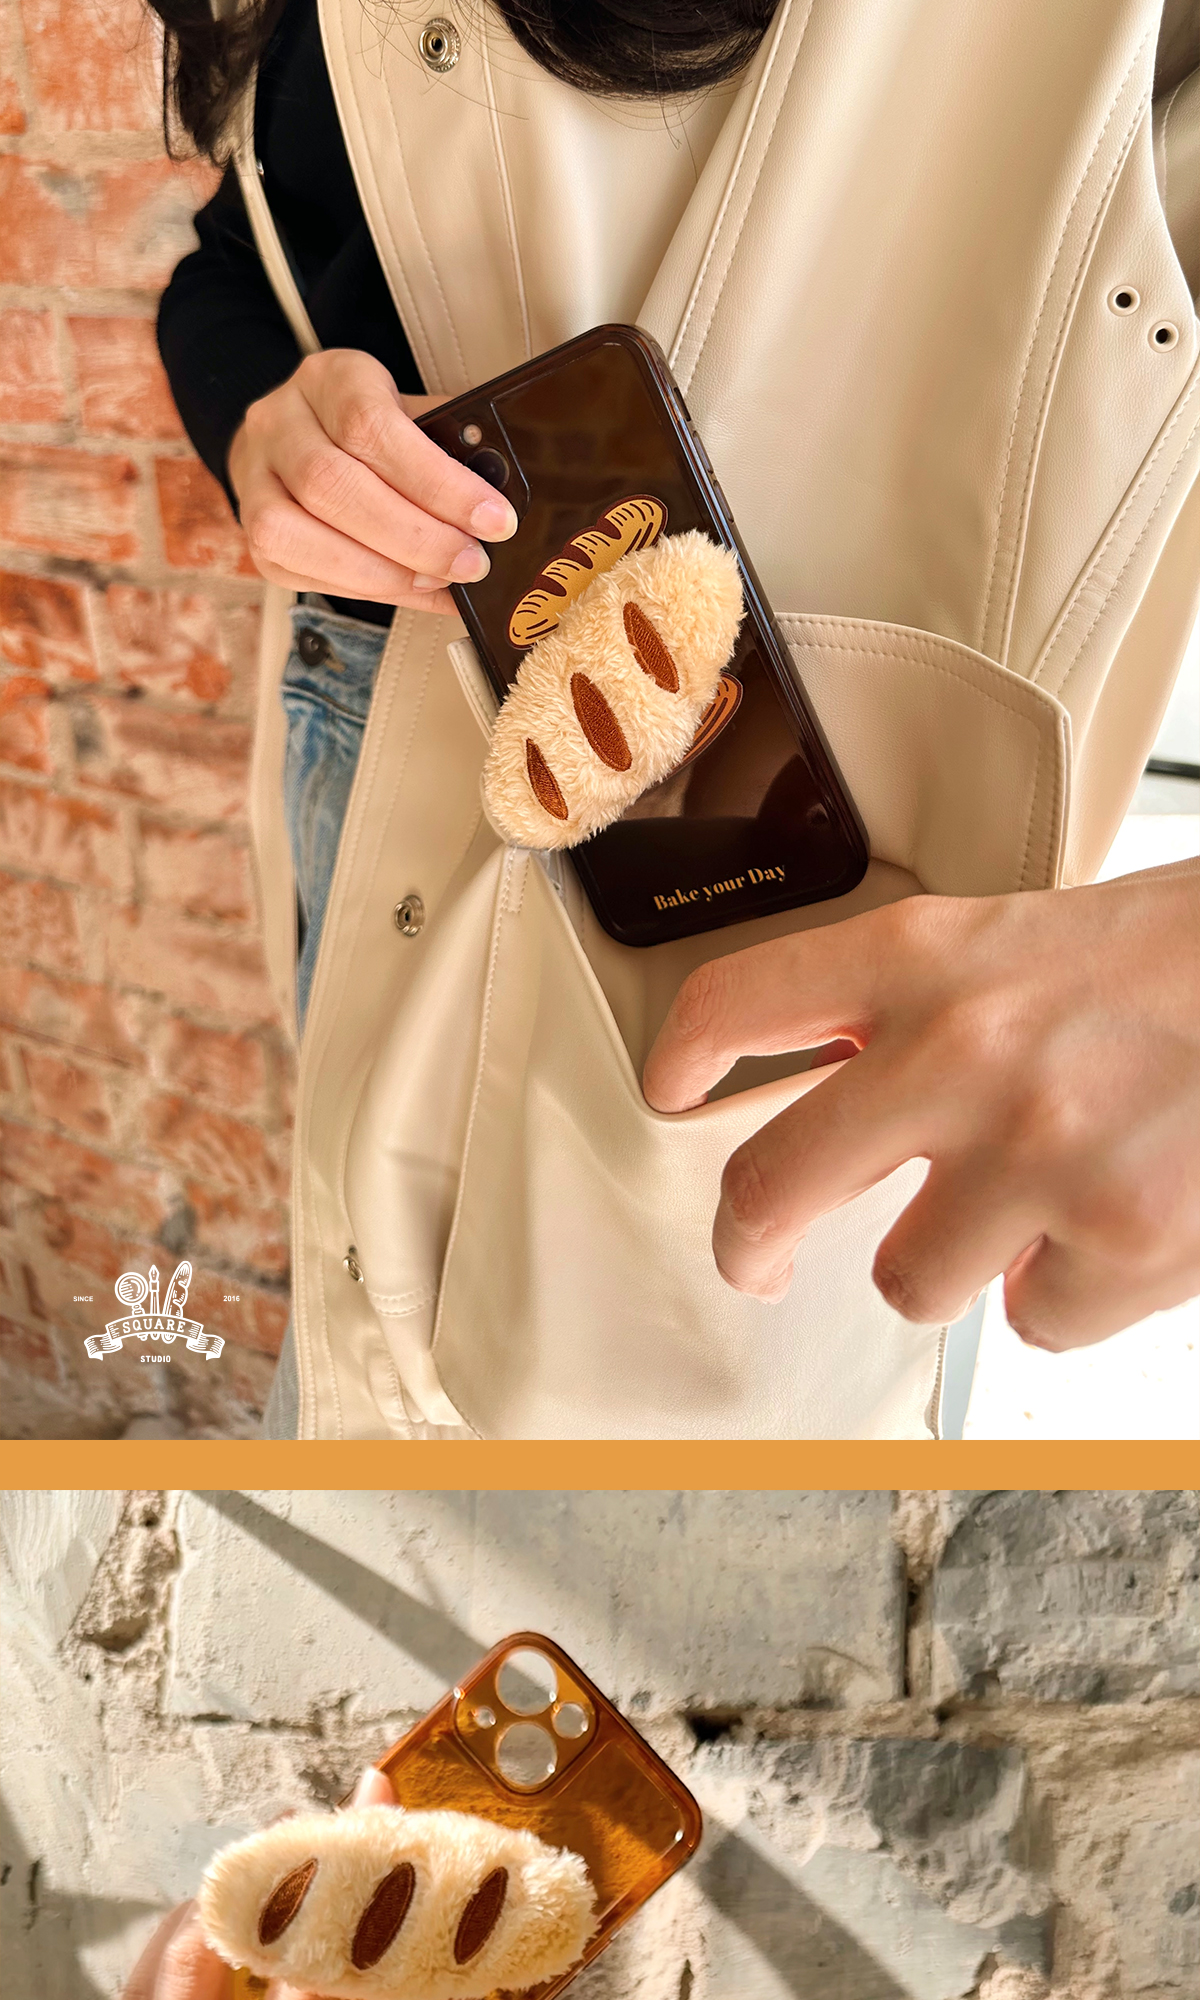 パン食品スマホ ホルダー オリジナルデザイン可愛いiphone iPadスマホバゲット